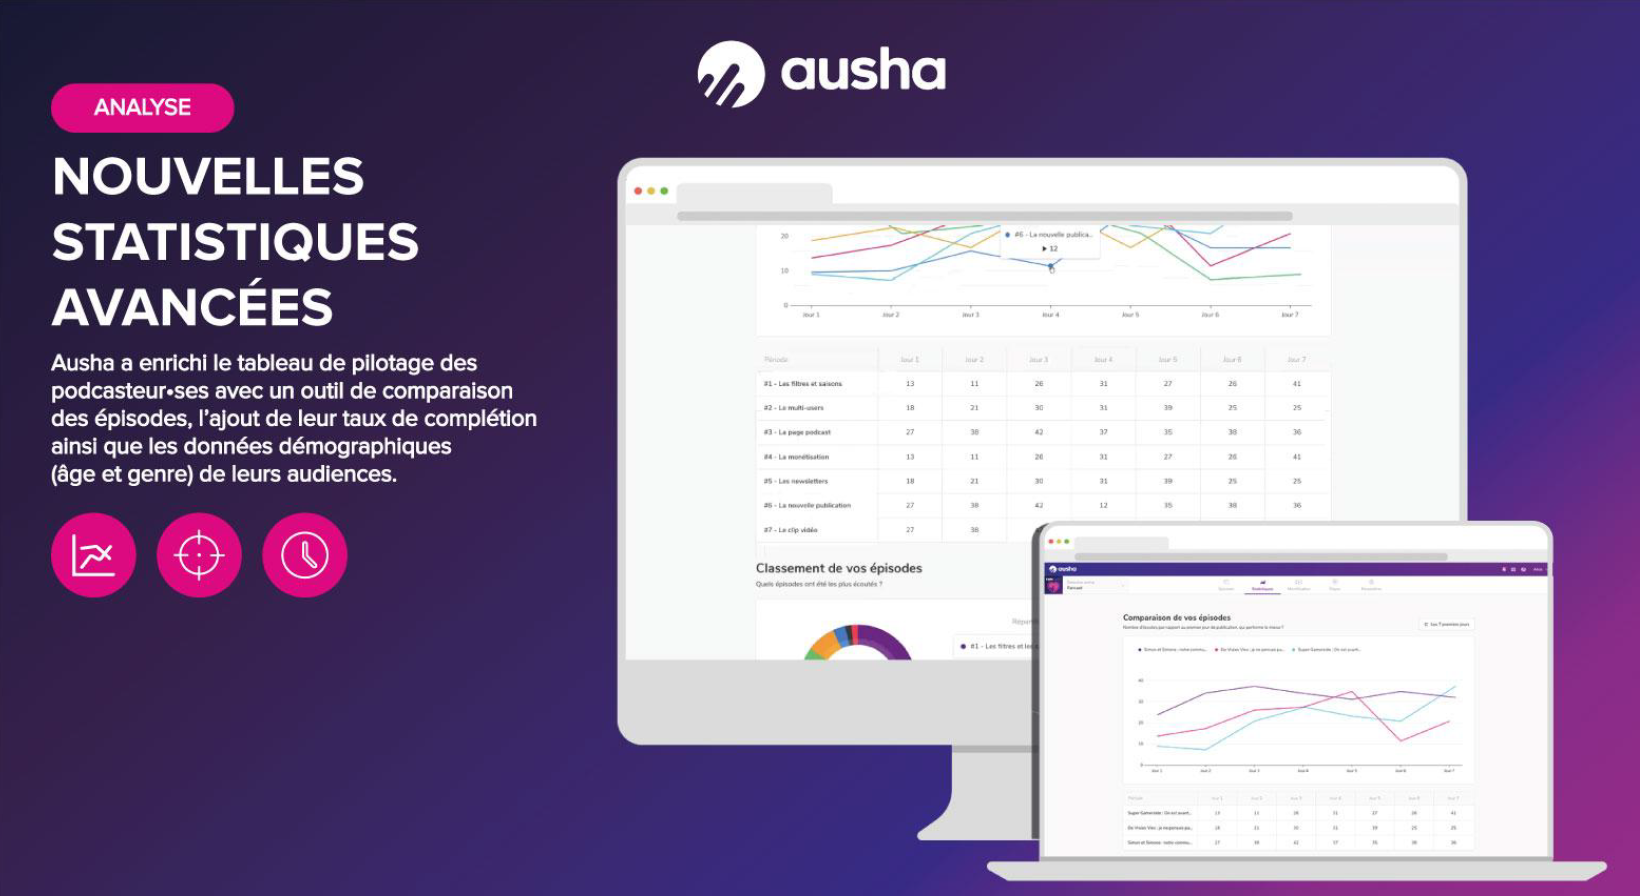 Ausha se positionne comme la plateforme avec tous les outils du Marketing du Podcast